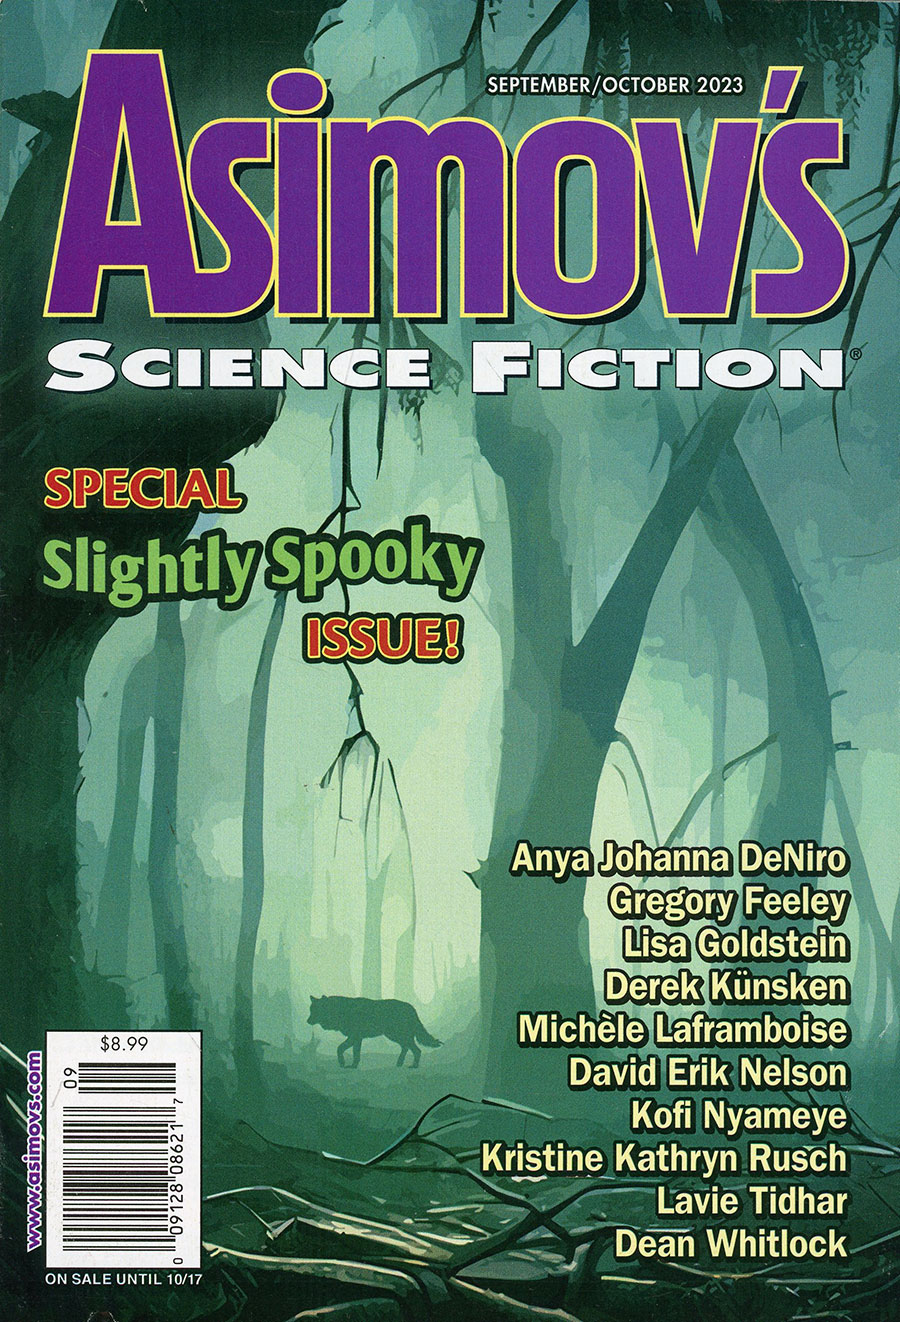 Asimovs Science Fiction Vol 47 #9 / #10 September / October 2023